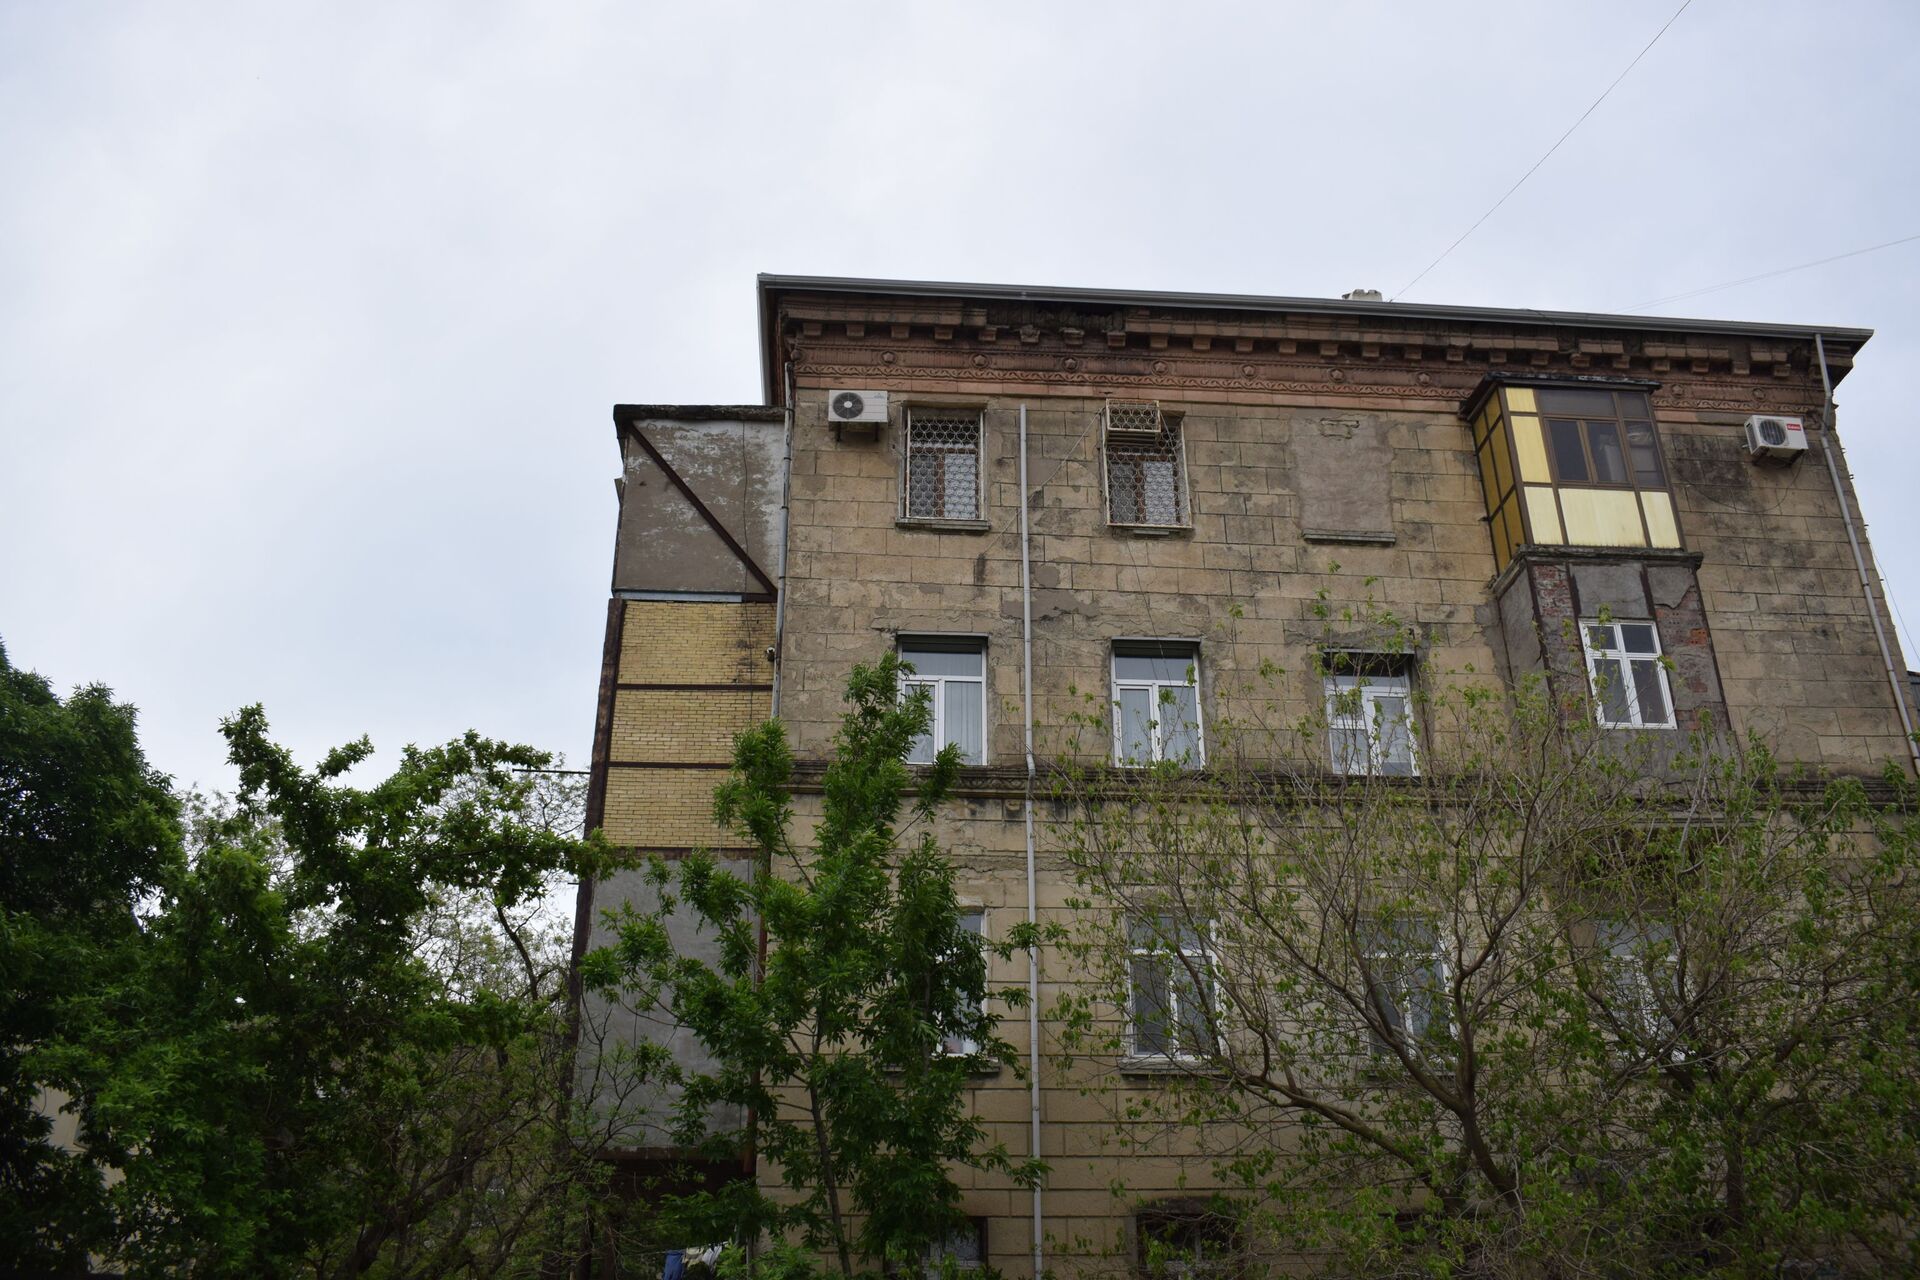 Bakıda göydən daş yağır: Aqlaylı binalar ölüm saçır - FOTO - Sputnik Azərbaycan, 1920, 06.05.2021